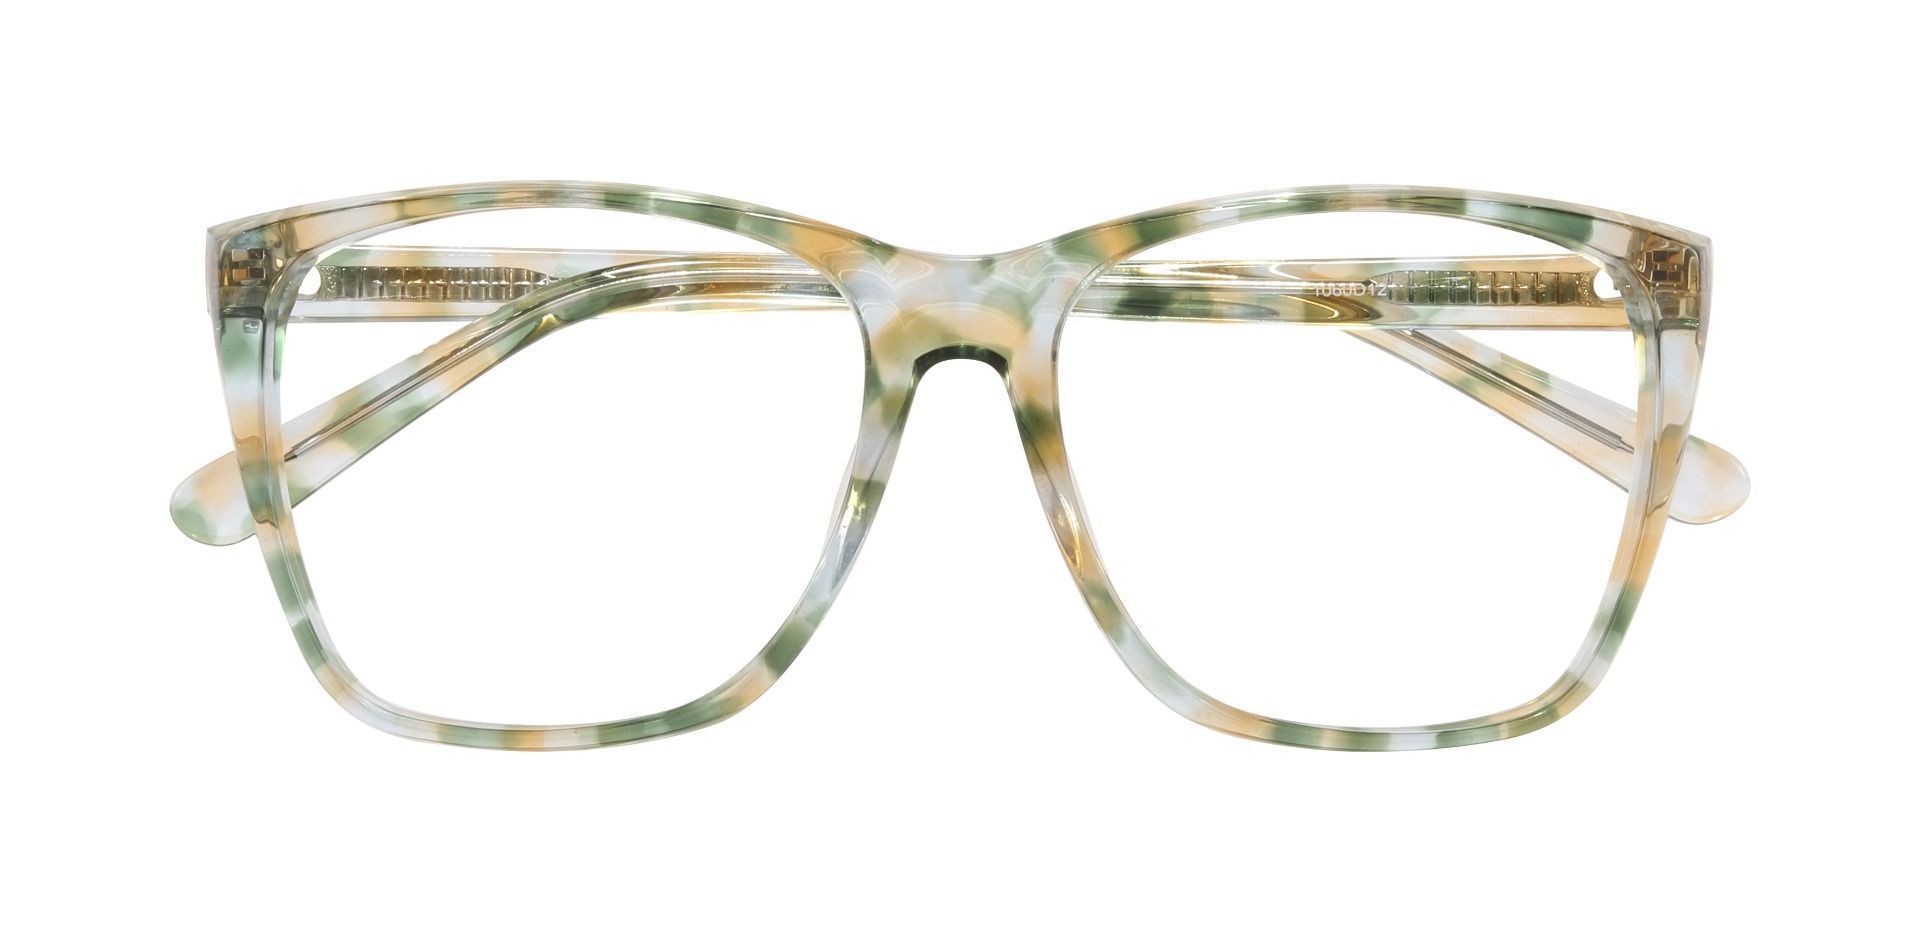 Loni Square Prescription Glasses - Green